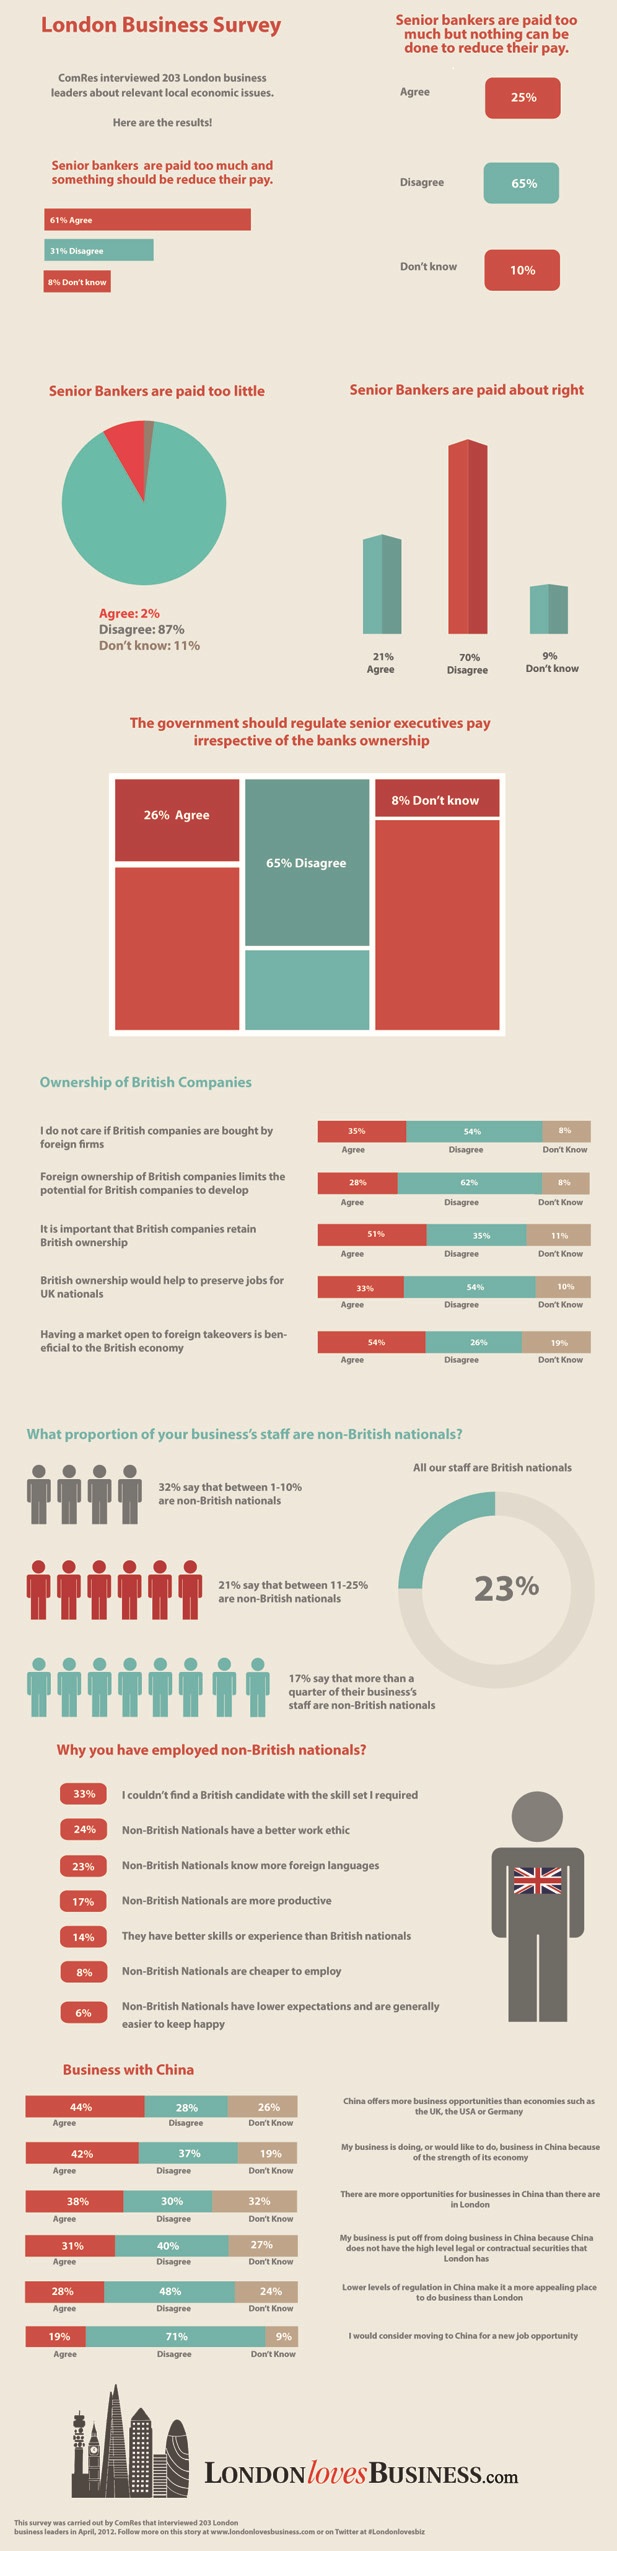 London Business Survey 2012